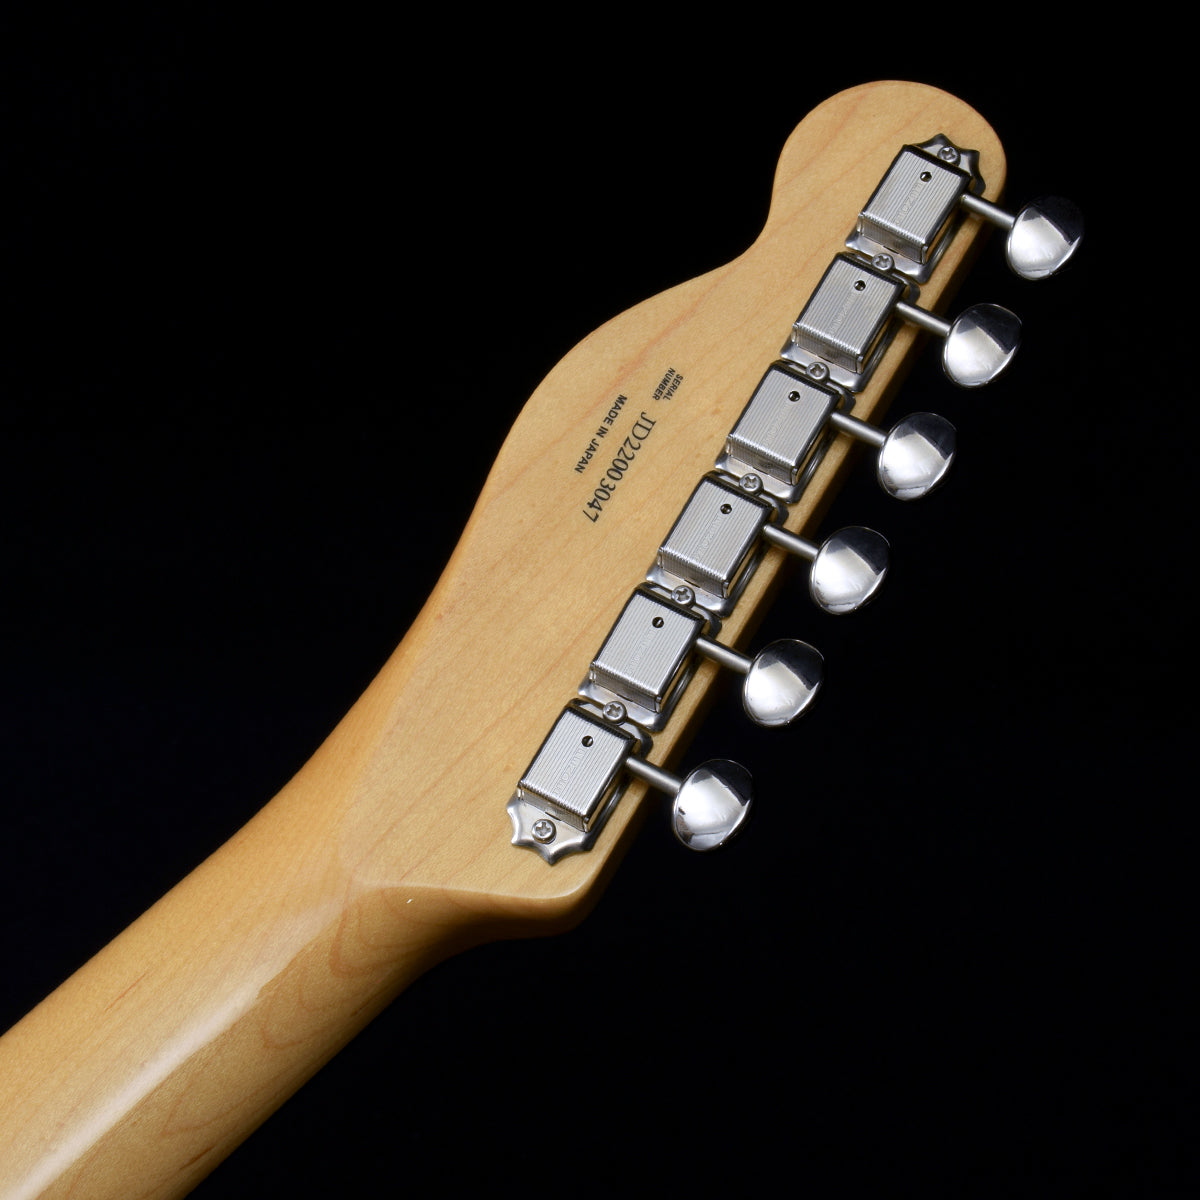 [SN JD22003047] USED Fender Fender / Made in Japan Heritage 60s Telecaster Custom 3-Tone Sunburst [20]